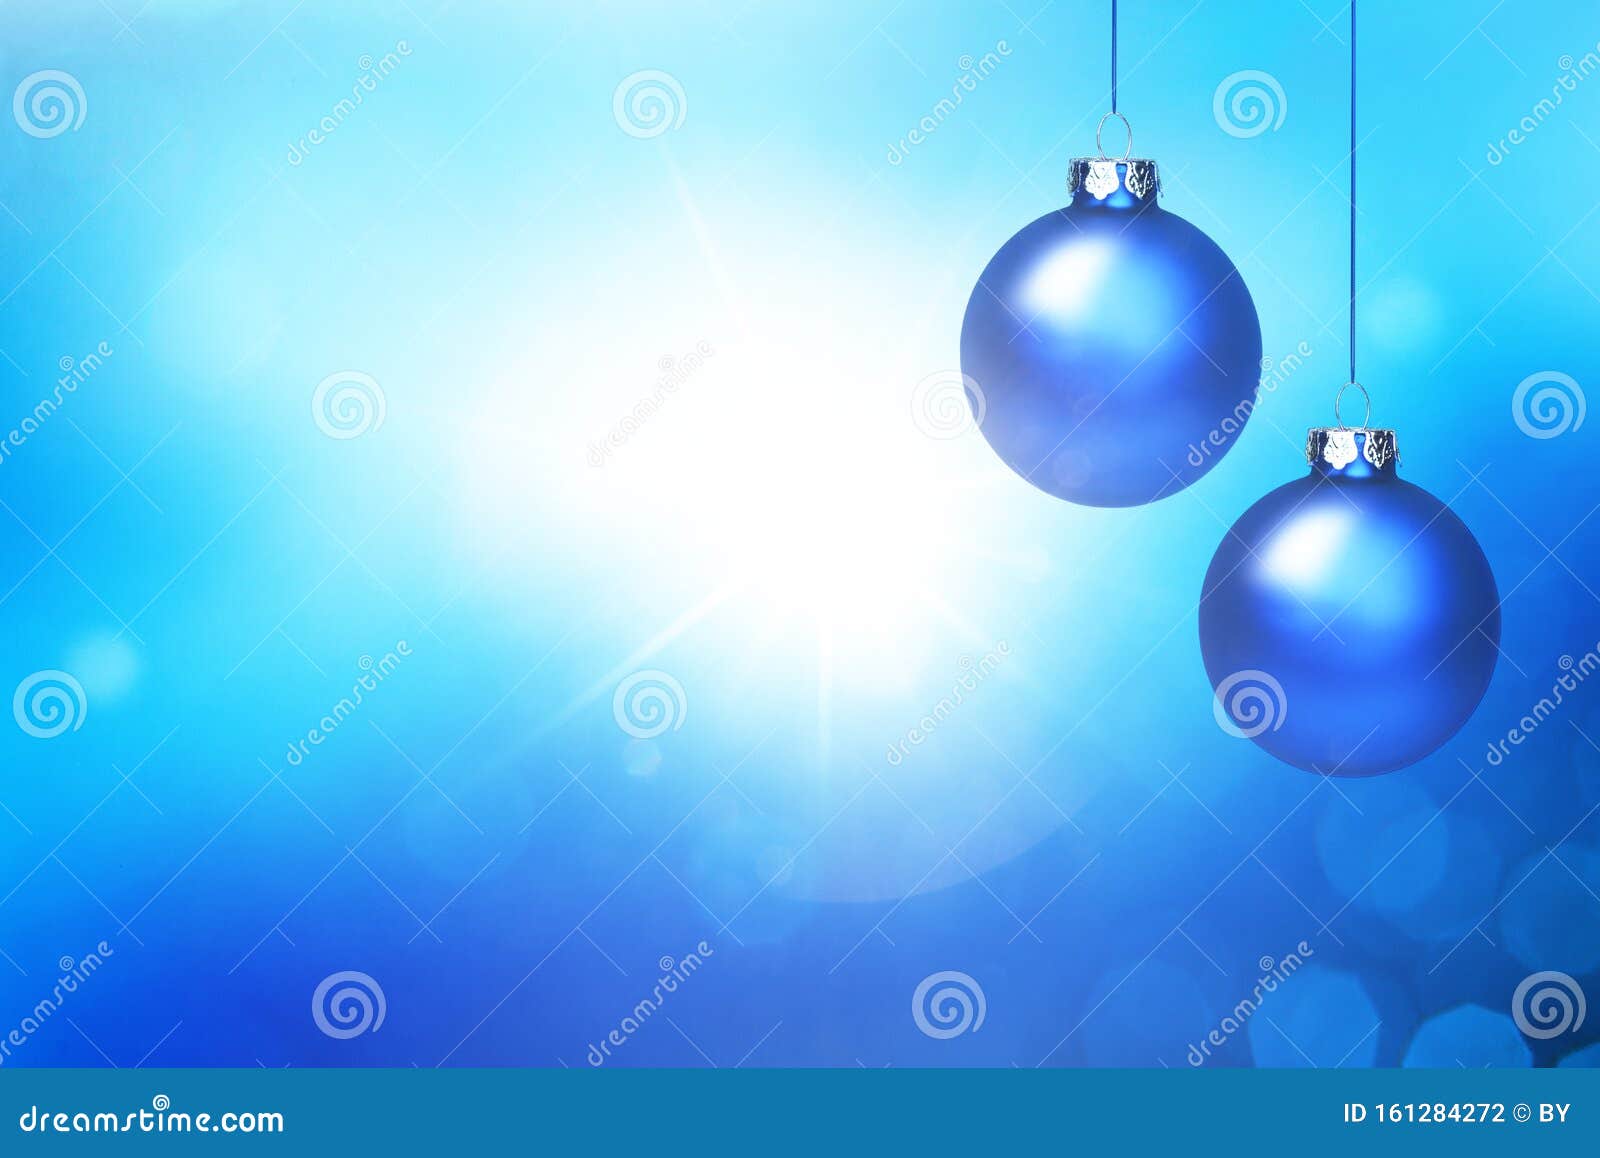 blaue weihnachtskugeln auf blauem hintergrund